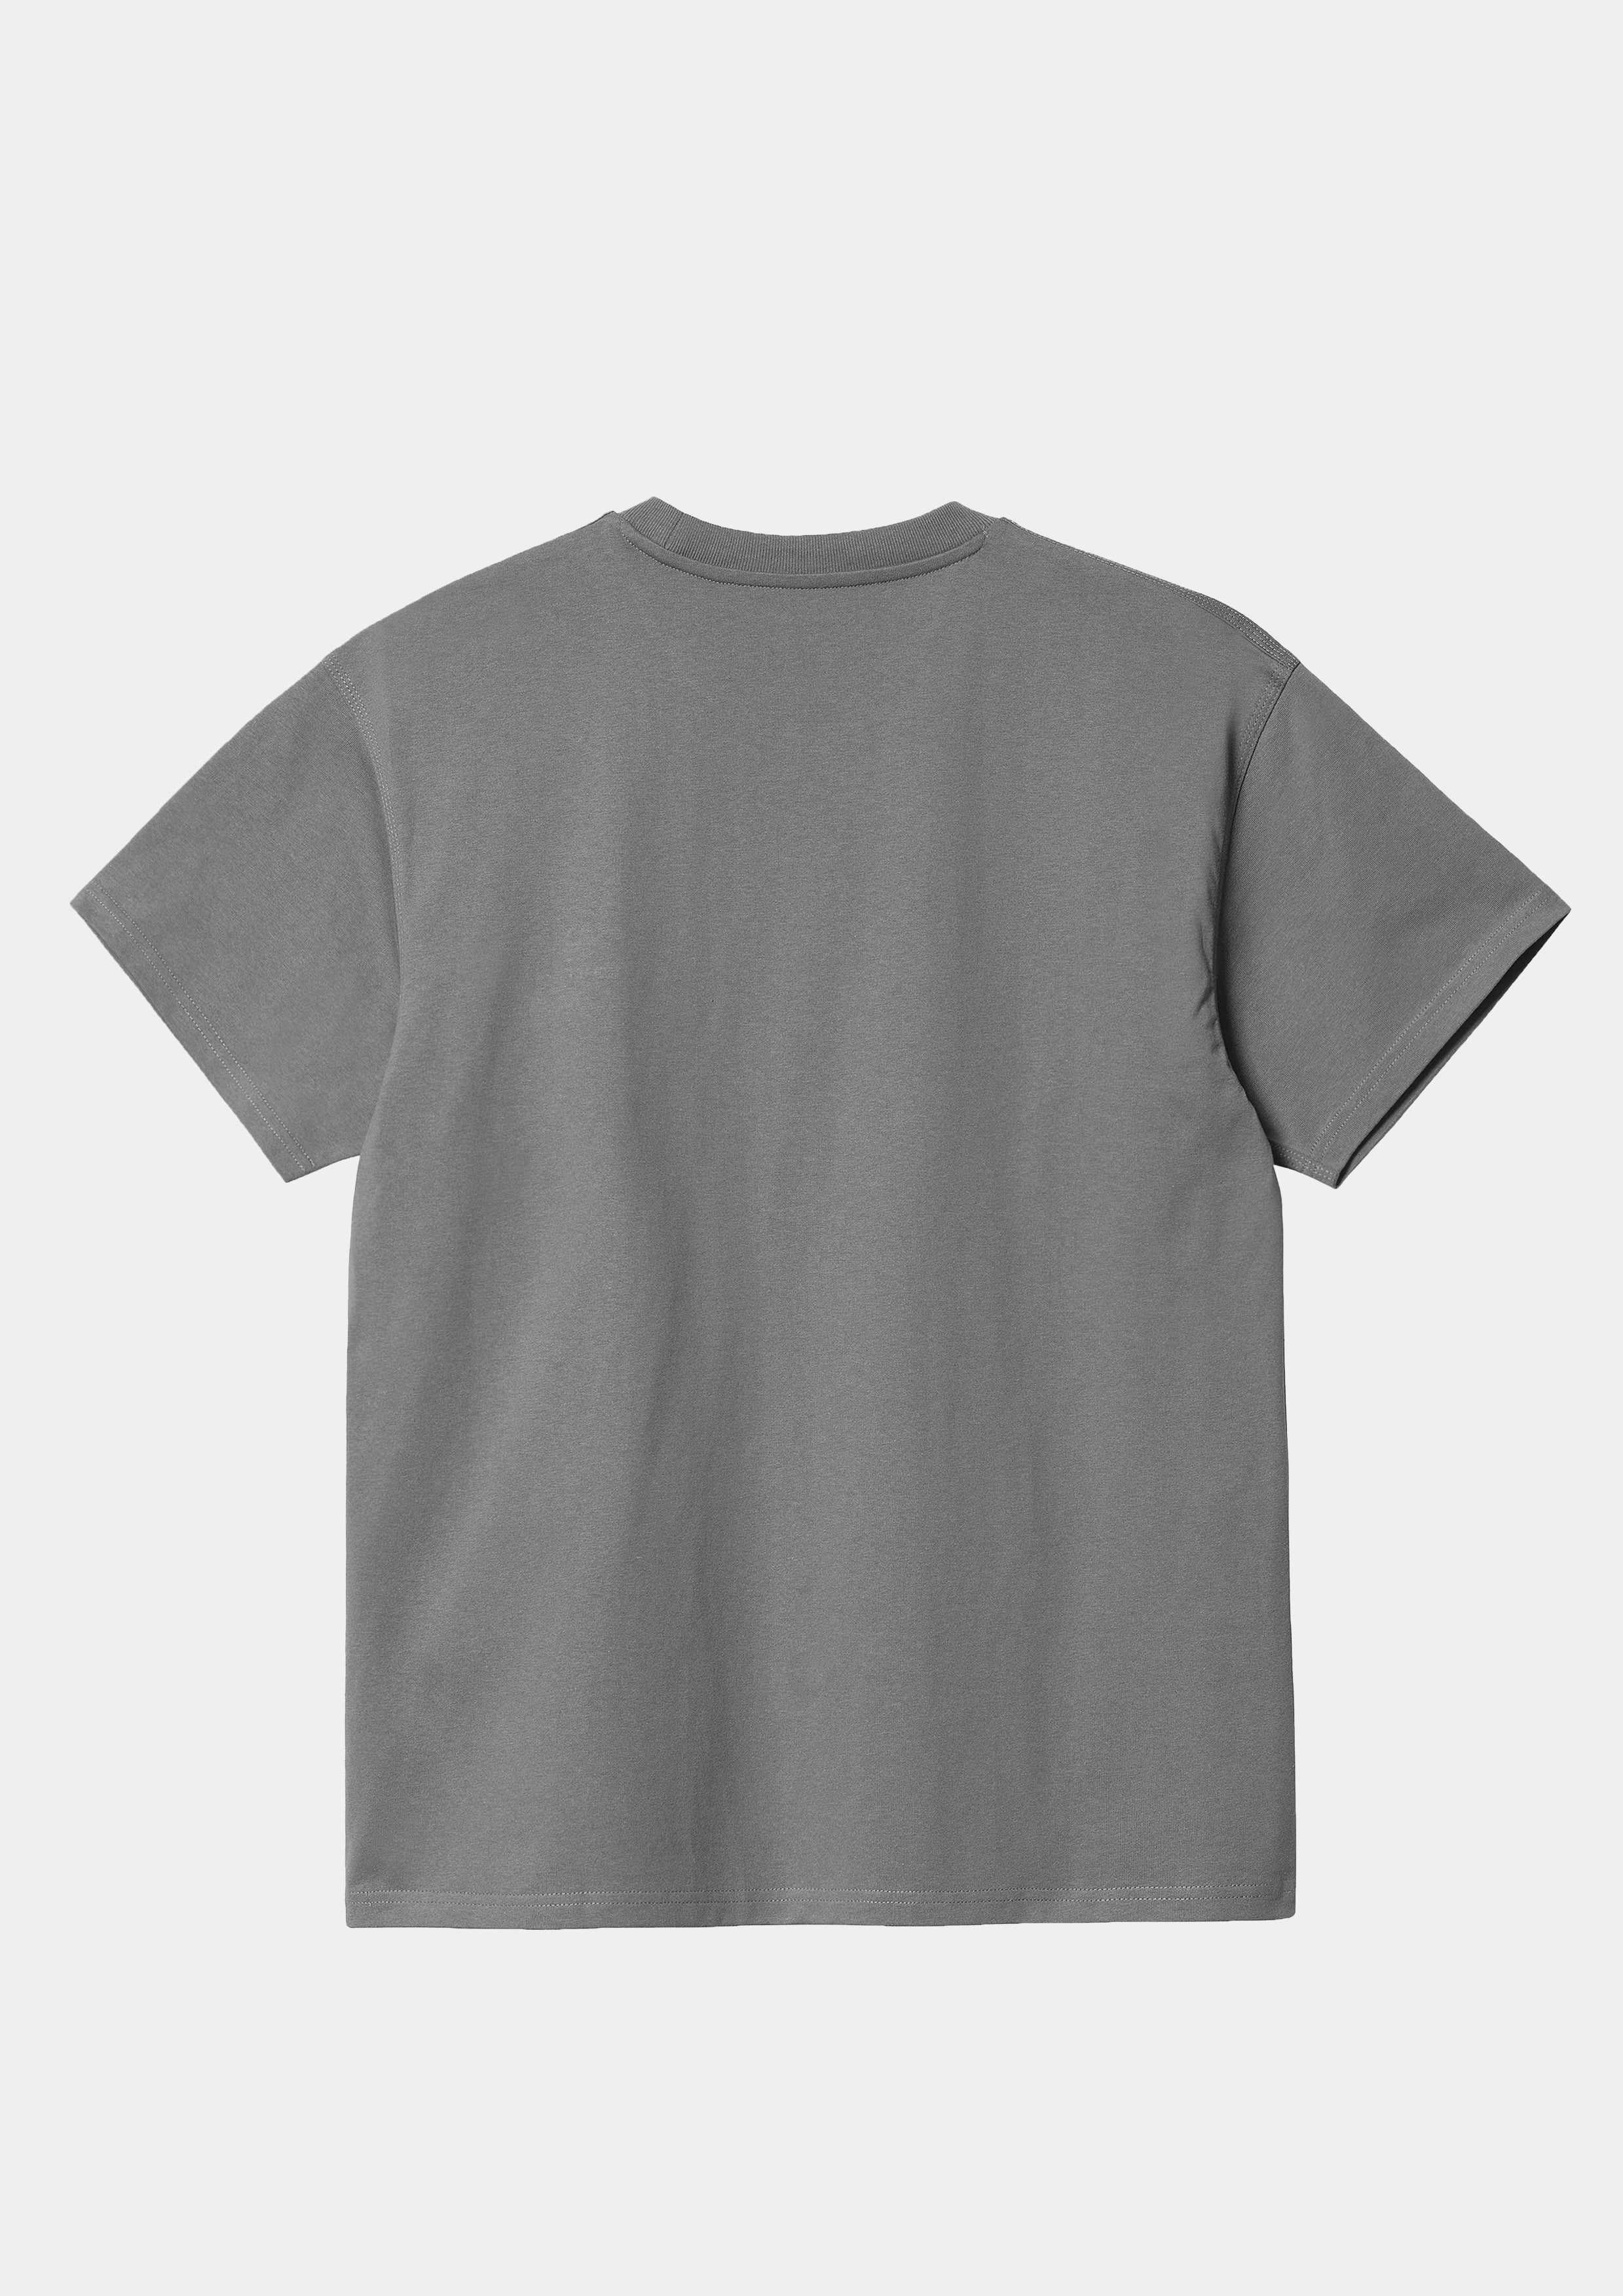 Blank 240GSM Oversized Tee - Smoked - UNEFFECTED STUDIOS® - T - shirt - UNEFFECTED STUDIOS®